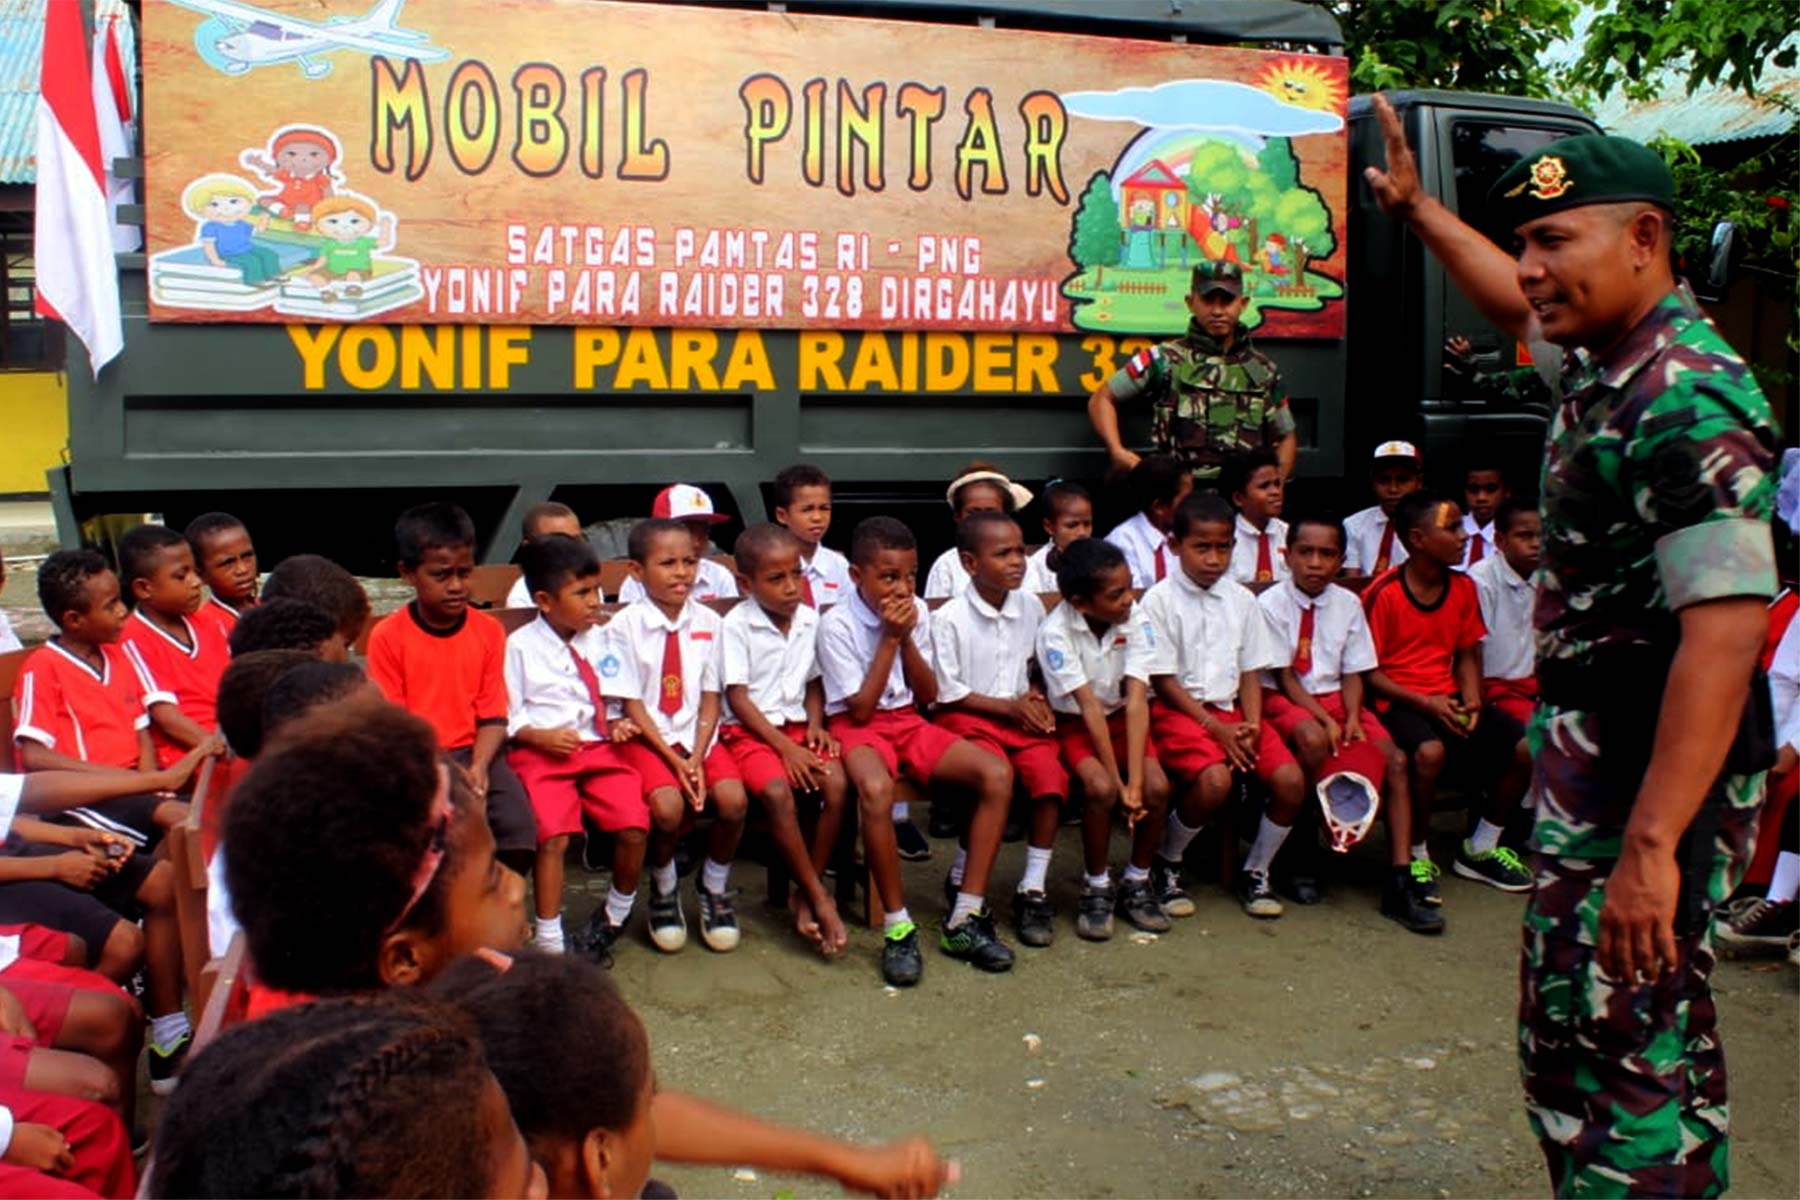 Salah satu anggota TNI yang bertugas di Pos Pamtas RI-PNG Yonif Para Raider 328/Dirhagayu sedang mengajar anak-anak di pedalaman Papua. Dibelakang mereka ada mobil pintar.